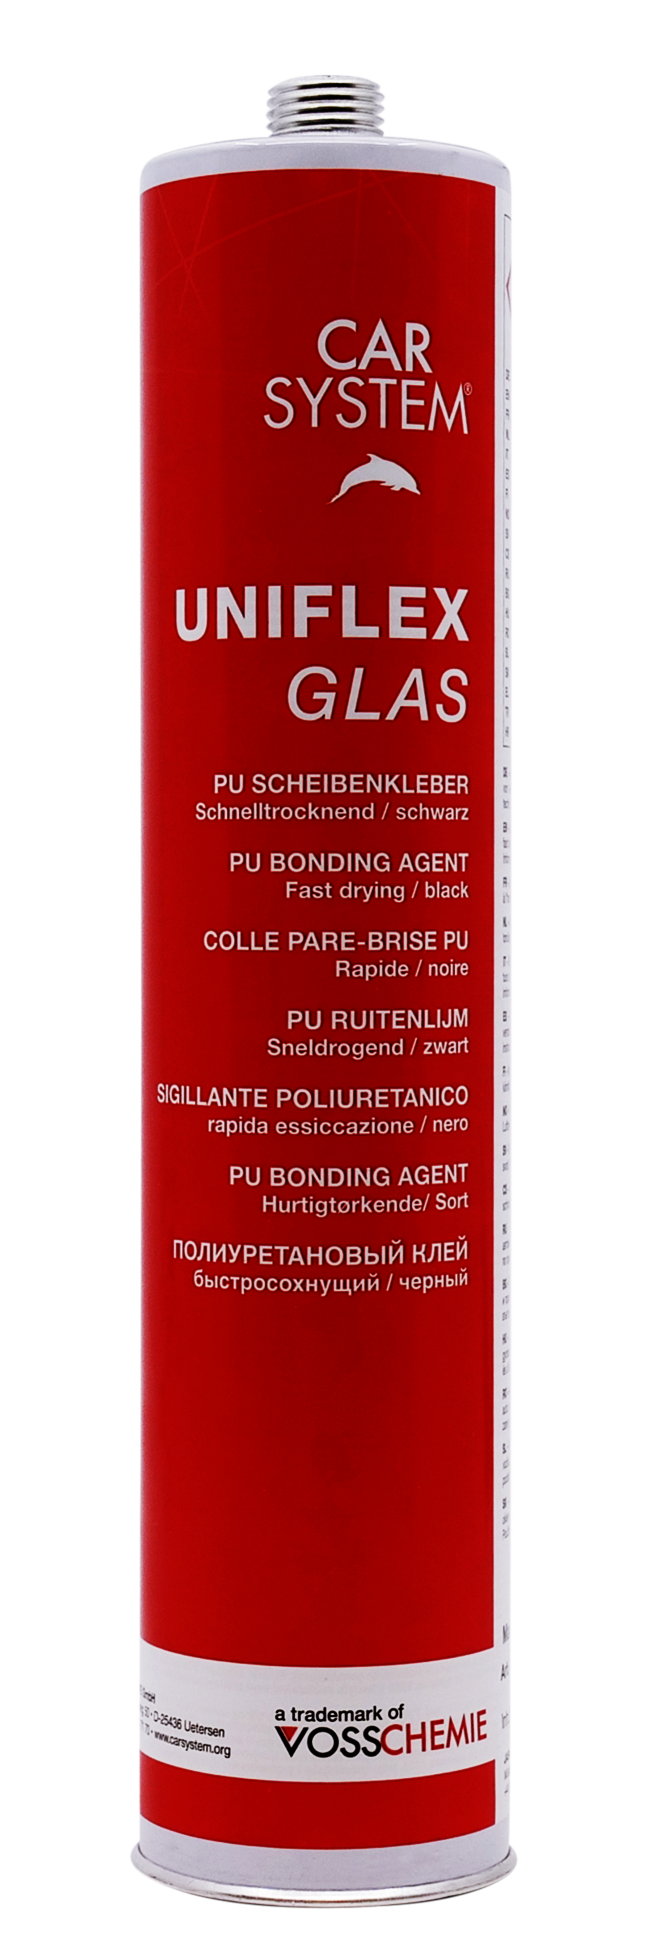 Carsystem Uniflex Glas Scheibenkleber